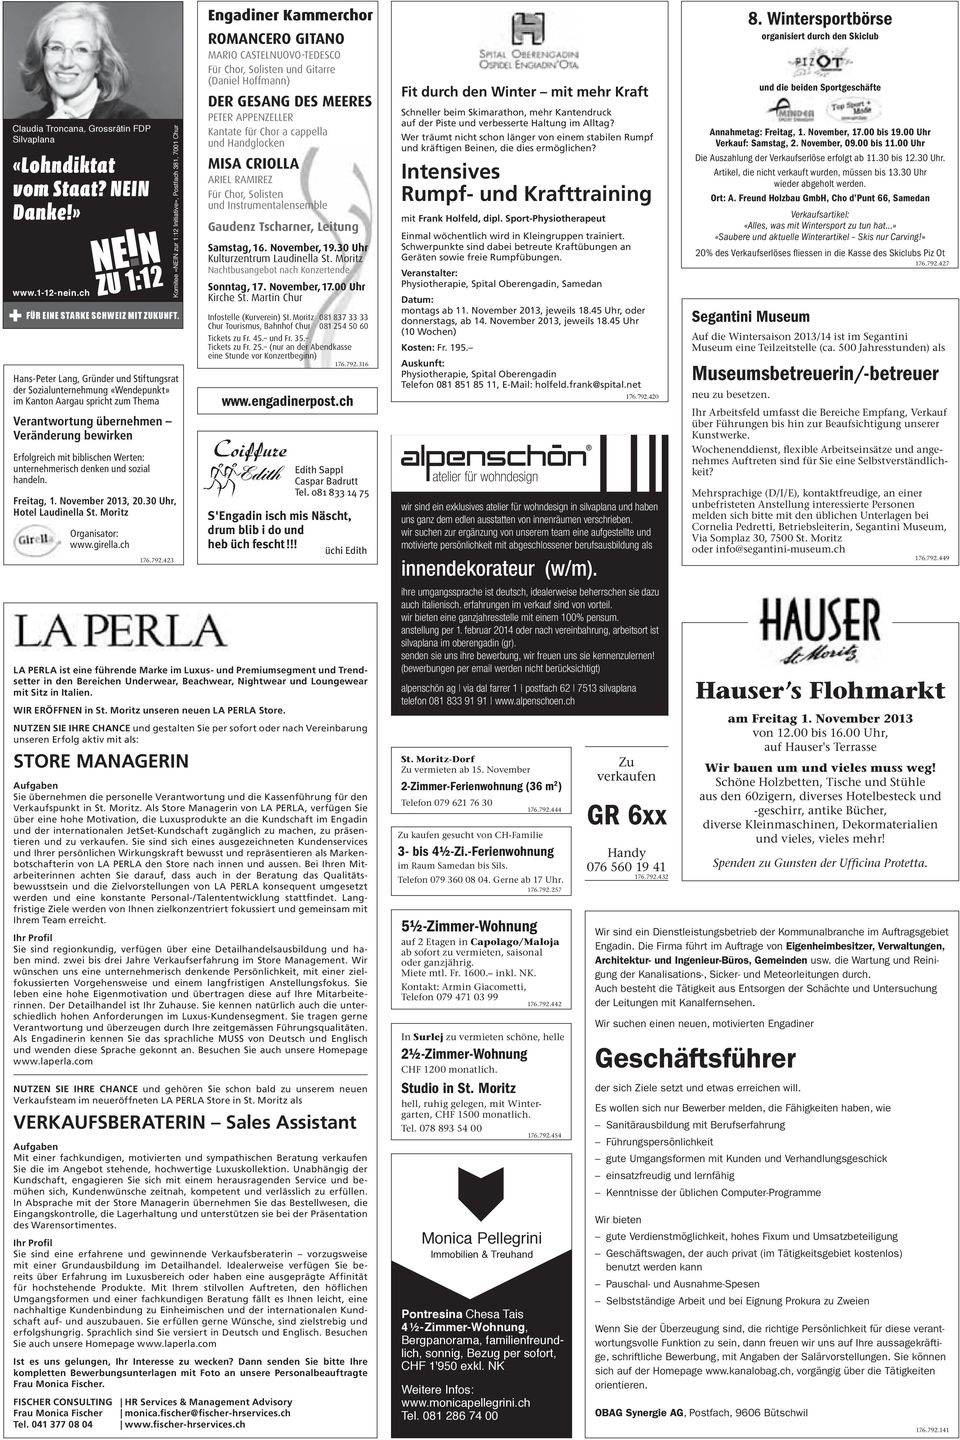 unternehmerisch denken und sozial handeln. Freitag, 1. November 2013, 20.30 Uhr, Hotel Laudinella St. Moritz Organisator: www.girella.ch 176.792.